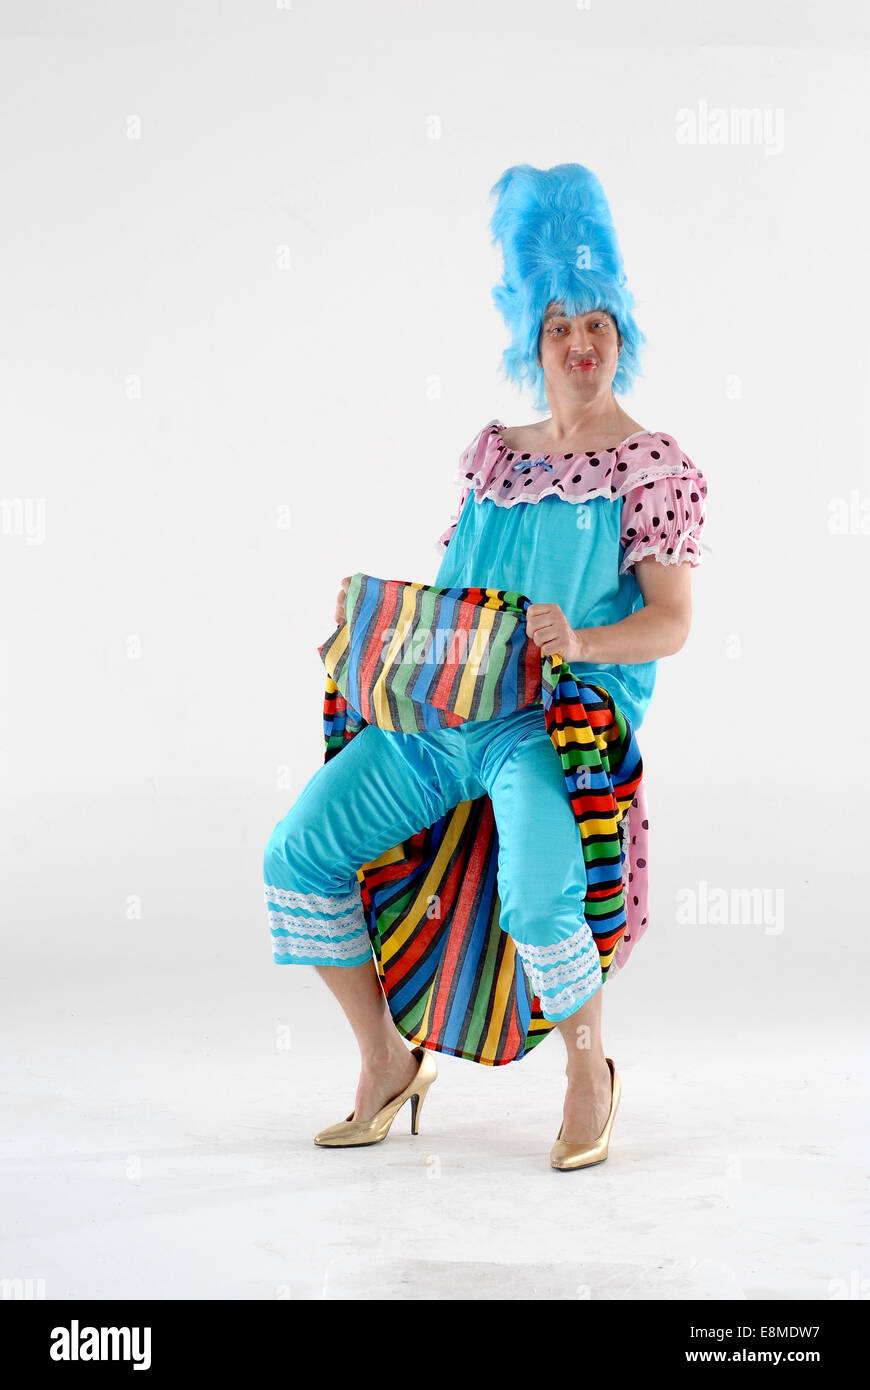 Mann in der Komödie Kostüm als eines der hässlichen Schwestern-Outfit von  Aschenputtel Pantomime, mit bunten Kleid und blauen Perücke Stockfotografie  - Alamy